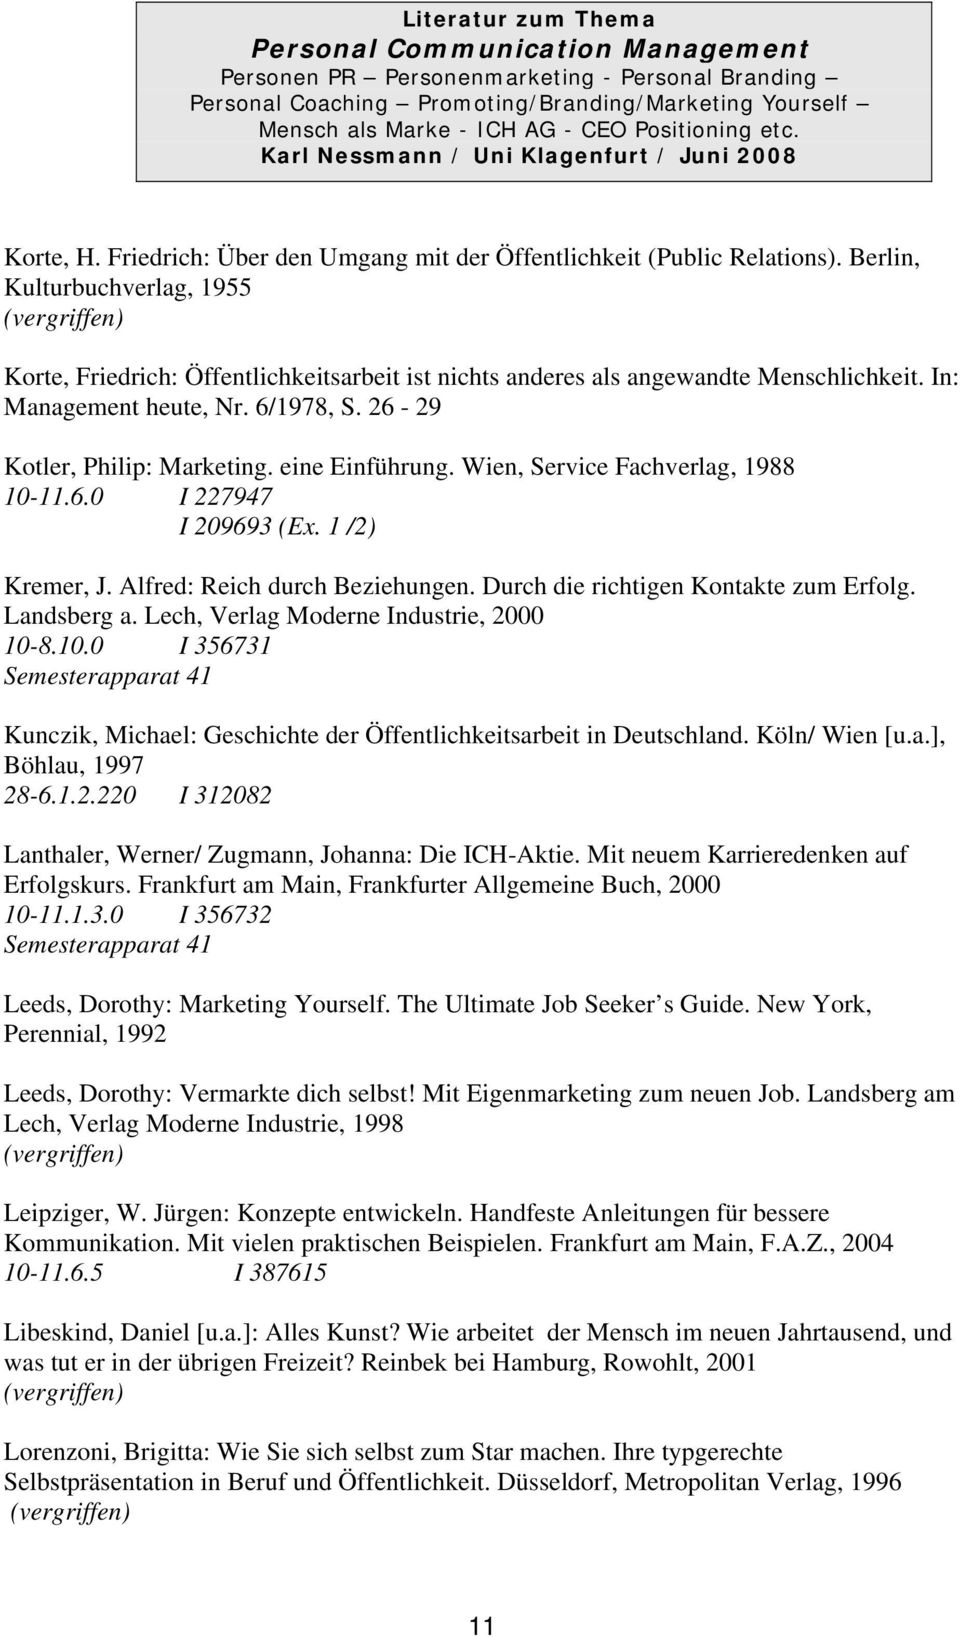 Durch die richtigen Kontakte zum Erfolg. Landsberg a. Lech, Verlag Moderne Industrie, 2000 10-8.10.0 I 356731 Kunczik, Michael: Geschichte der Öffentlichkeitsarbeit in Deutschland. Köln/ Wien [u.a.], Böhlau, 1997 28-6.